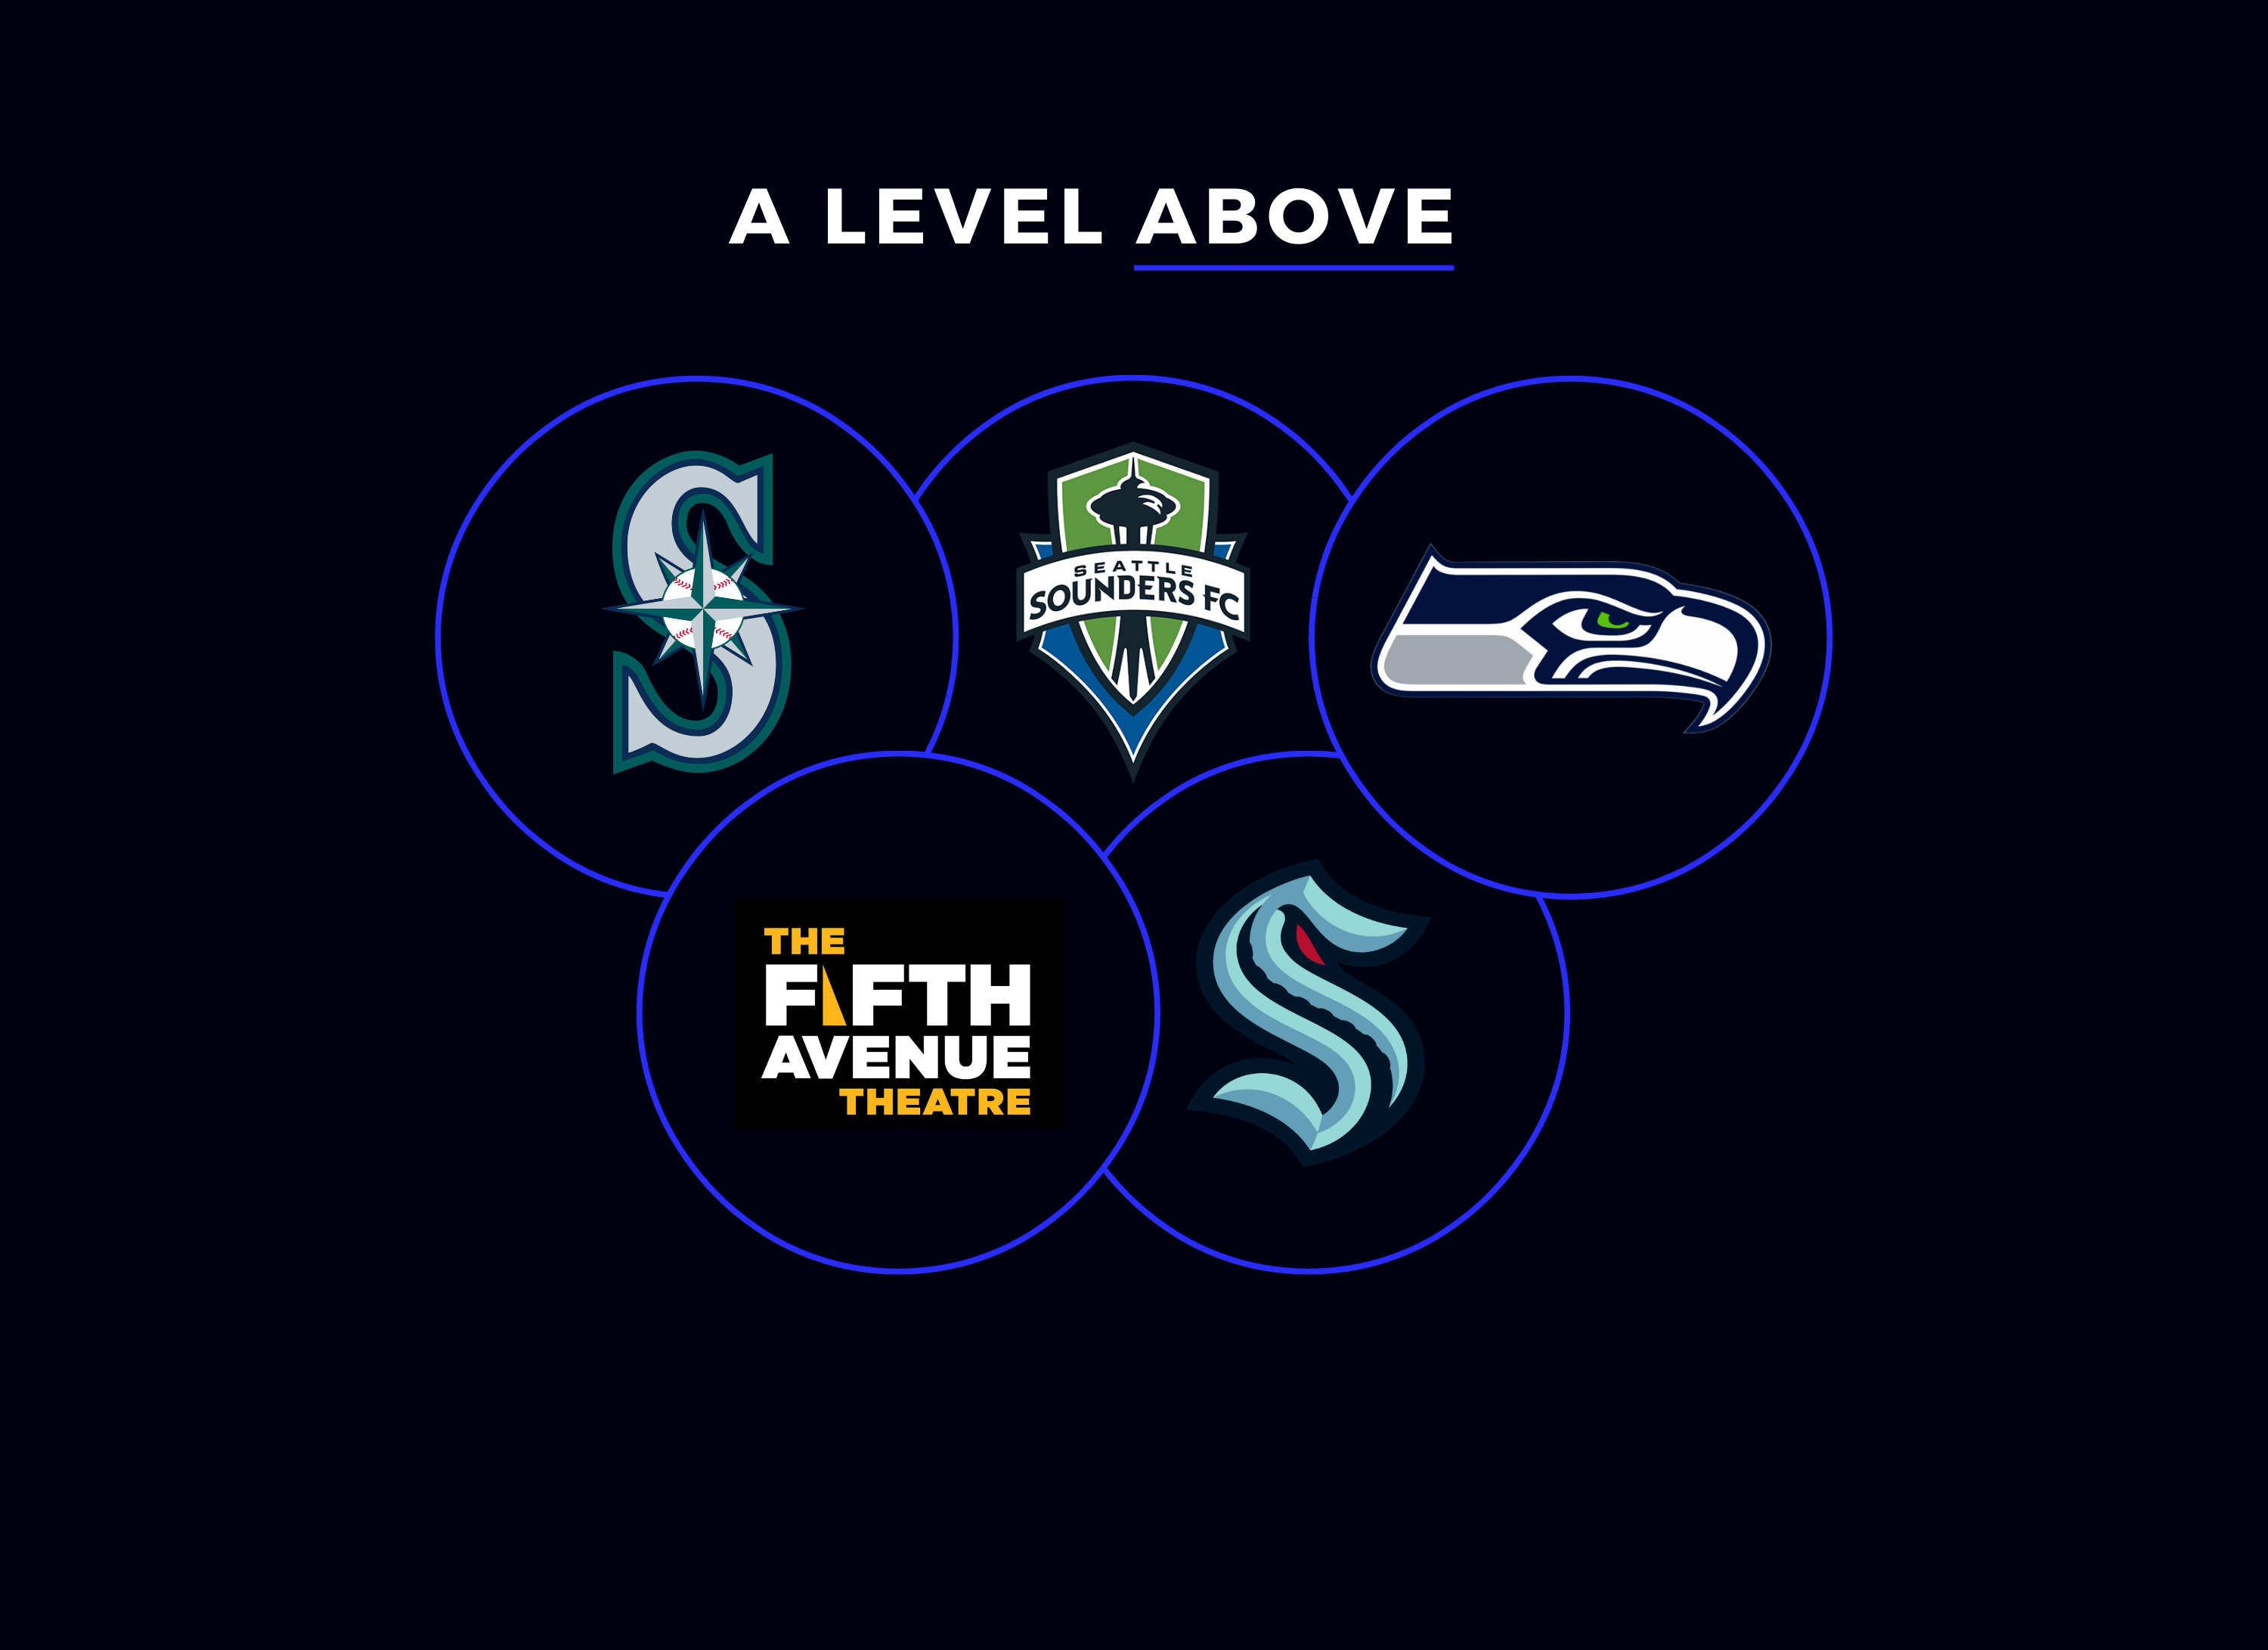 Seattle Seahawks - Image Engineering